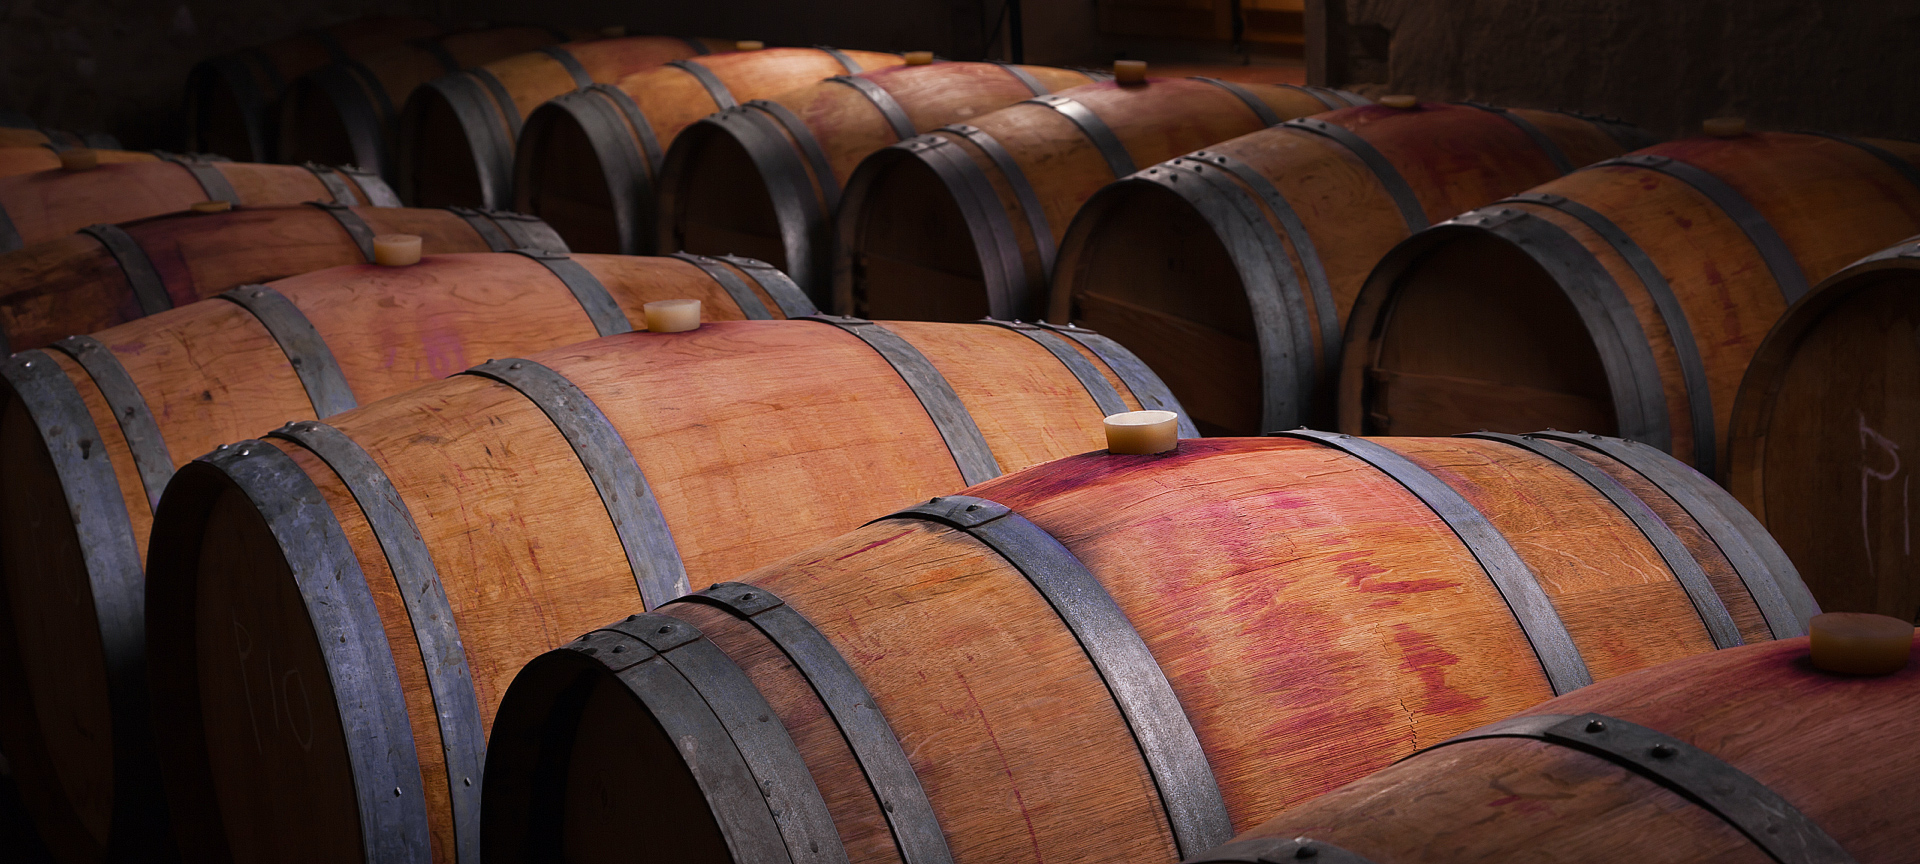 Houten wijnvaten opgeslagen in kelder.